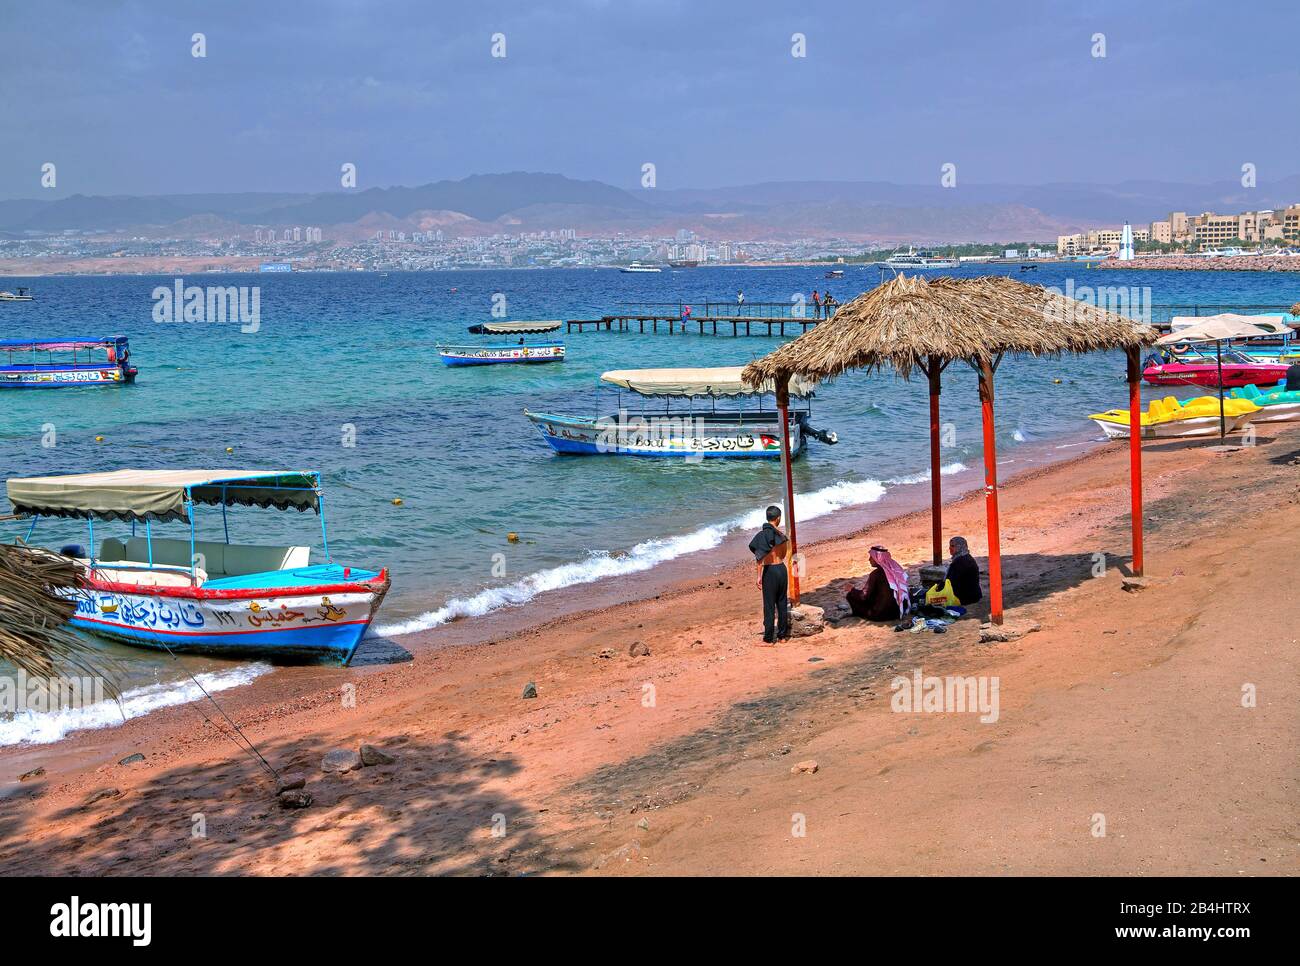 Einheimische am Stadtstrand mit Ausflugsbooten und Blick auf Eilat Akaba Akaba, Golf von Akaba, Rotes Meer, Jordanien Stockfoto